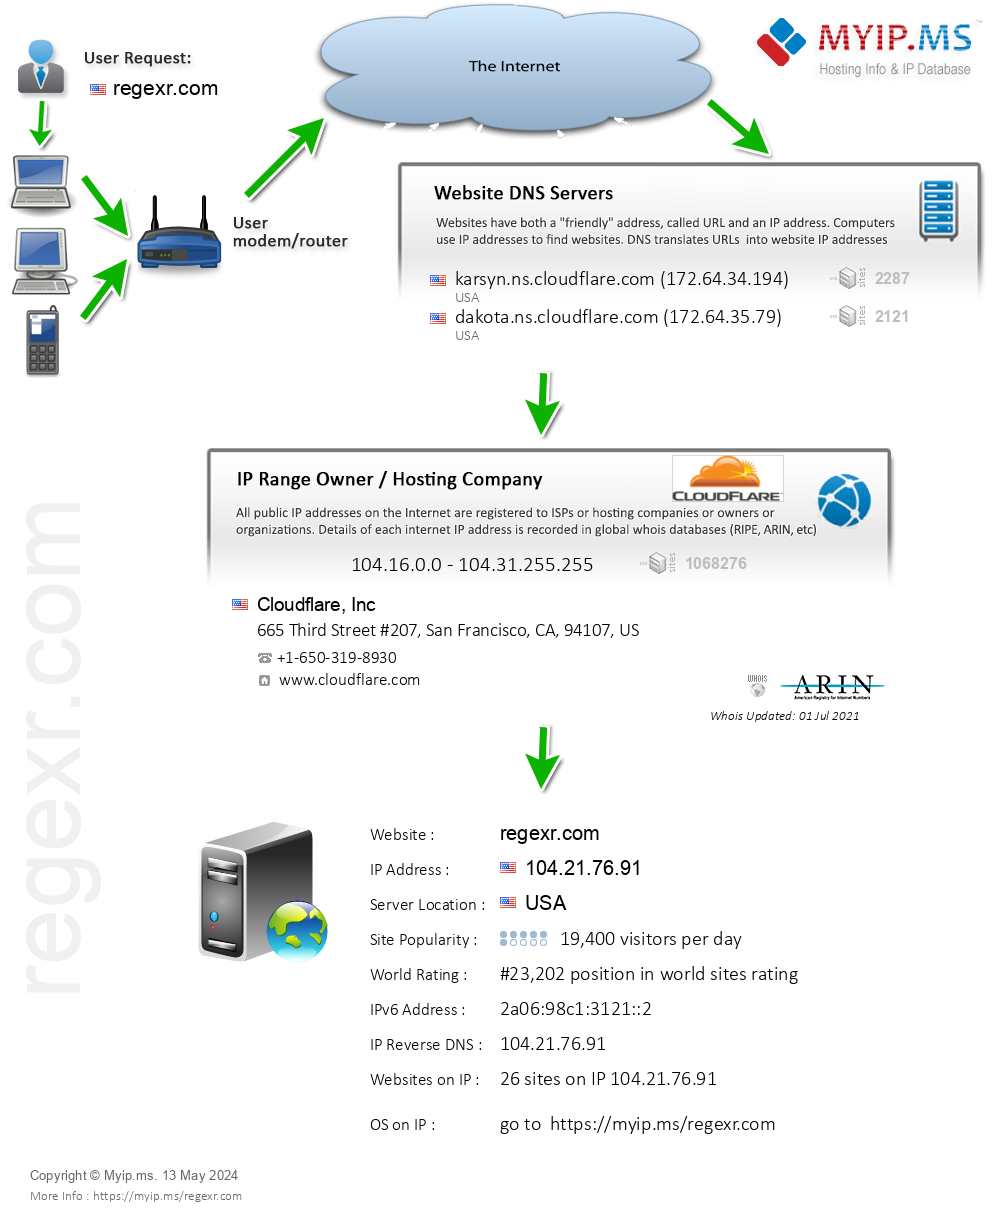 Regexr.com - Website Hosting Visual IP Diagram